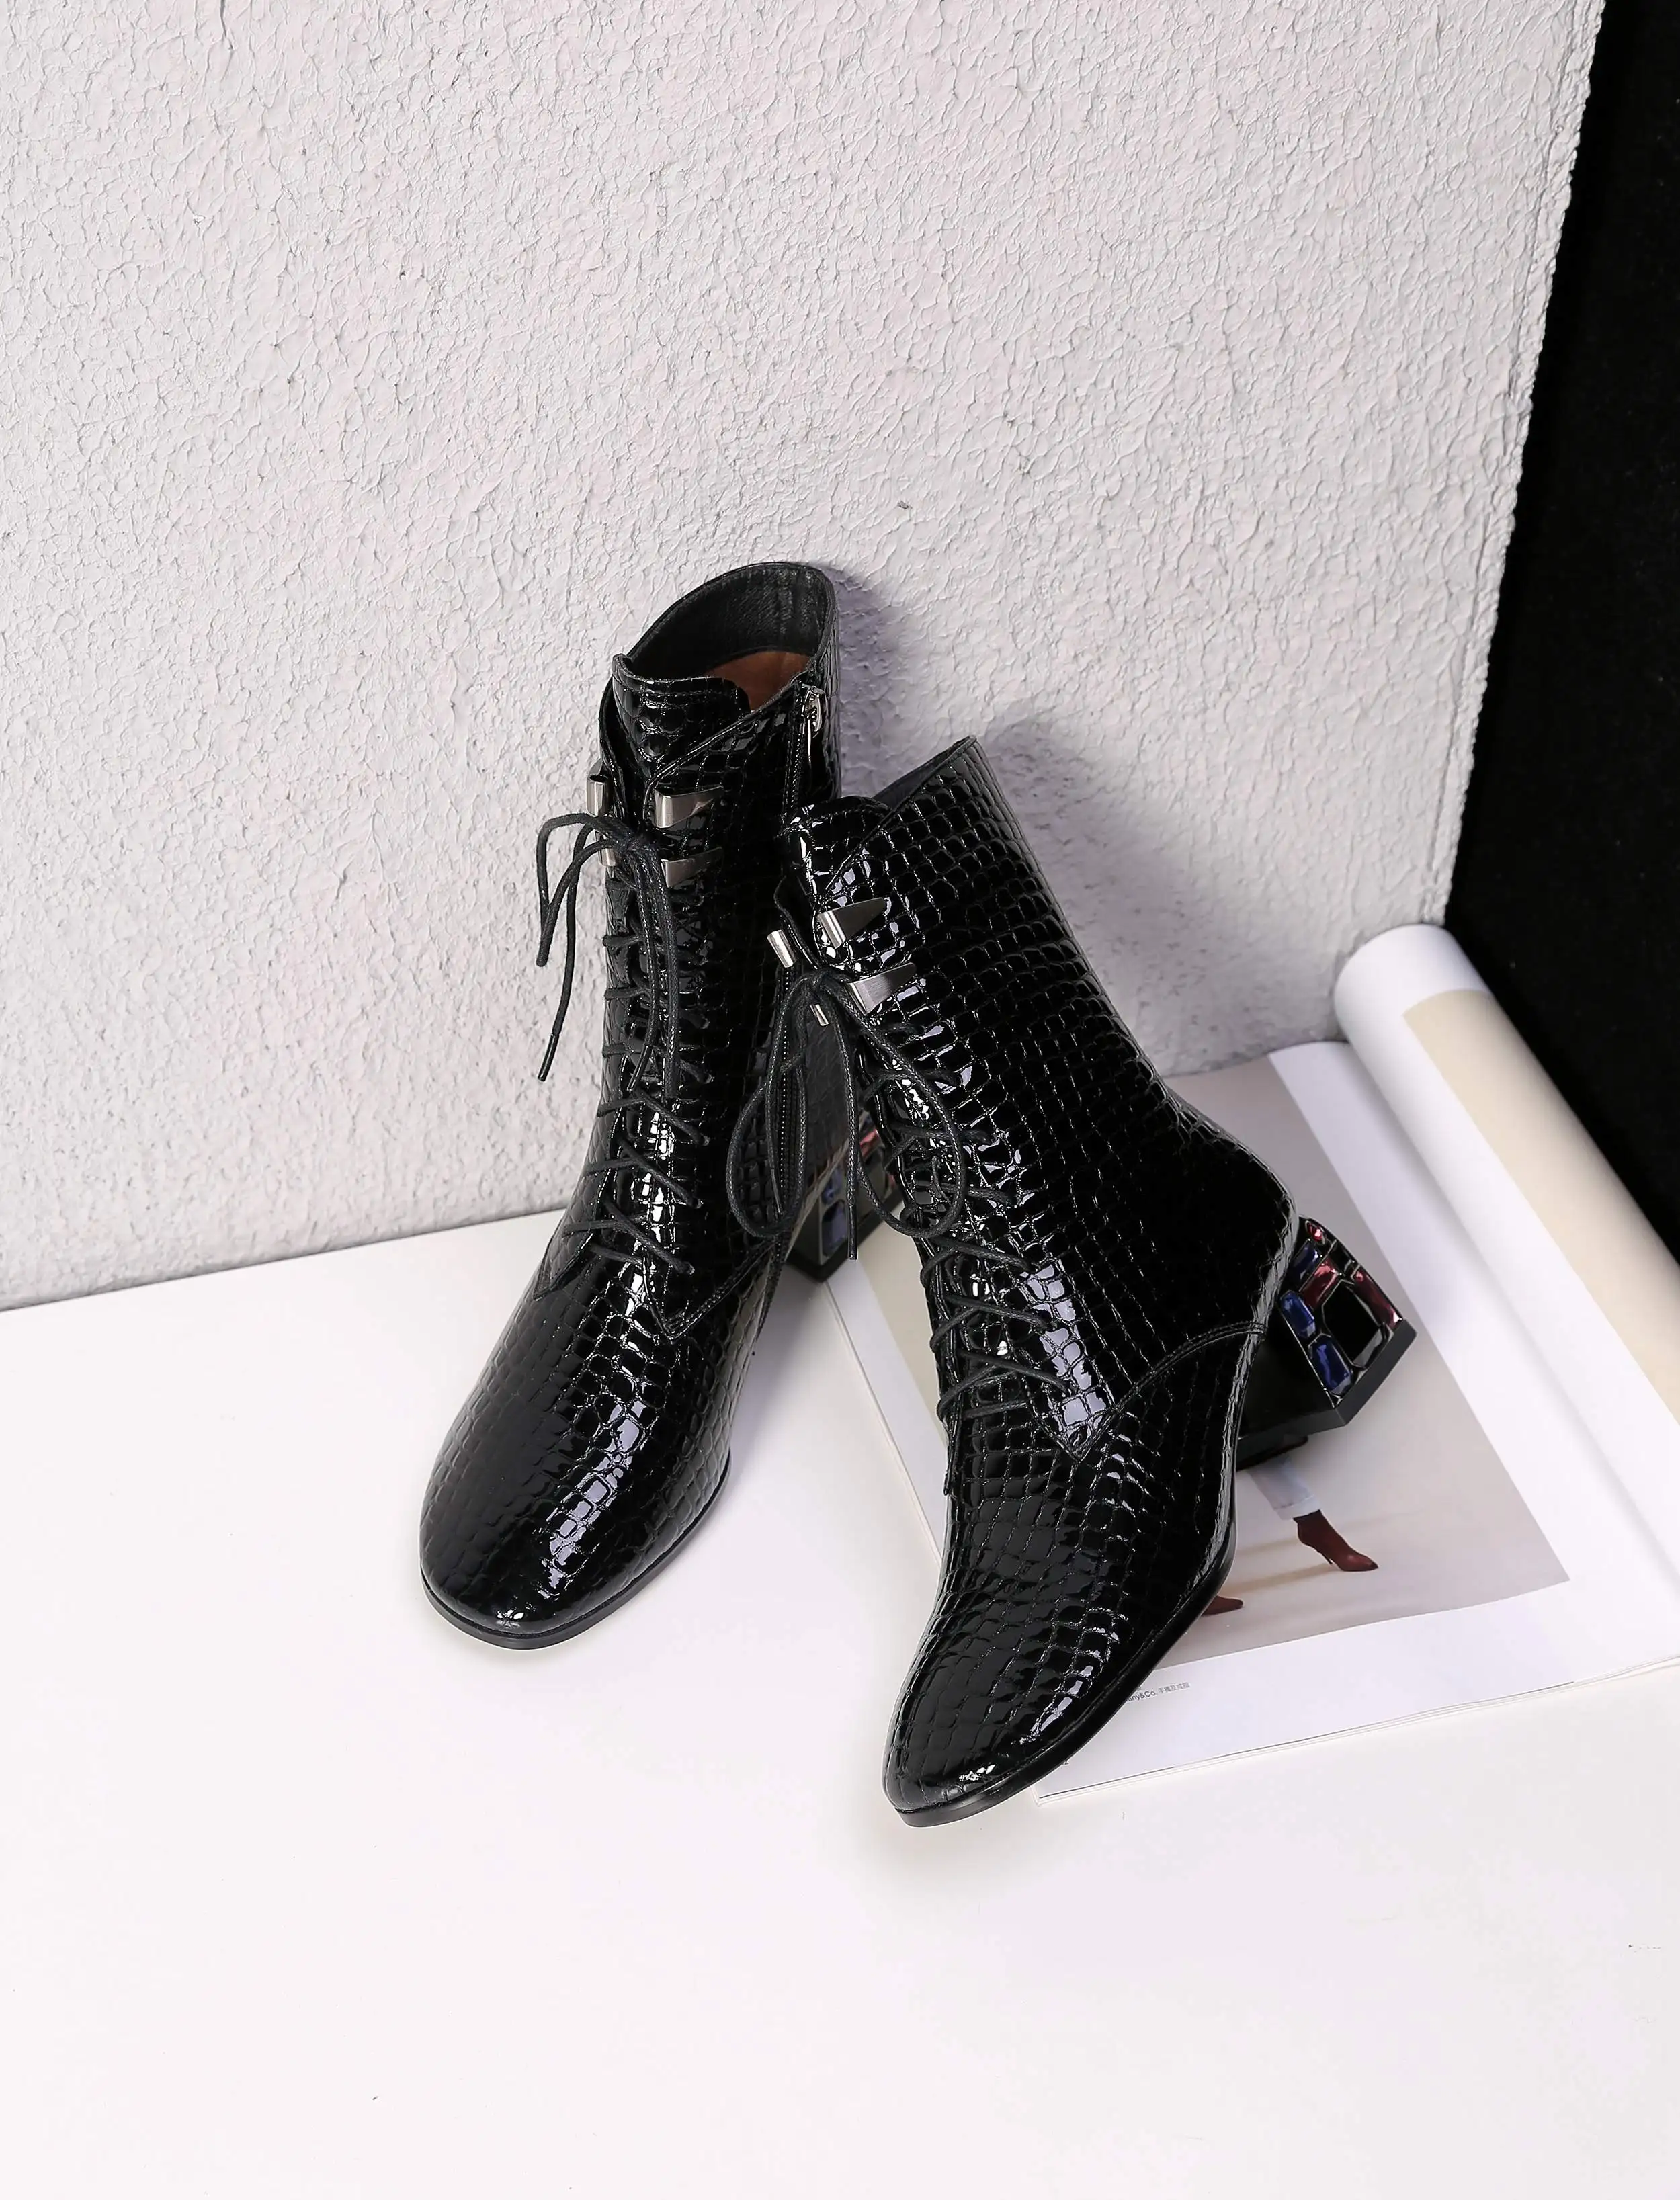 Krazing pot/ г. Ботинки Челси из микрофибры с круглым носком и перекрестной шнуровкой офисные женские теплые ботинки до середины икры с металлическими застежками, L3f5